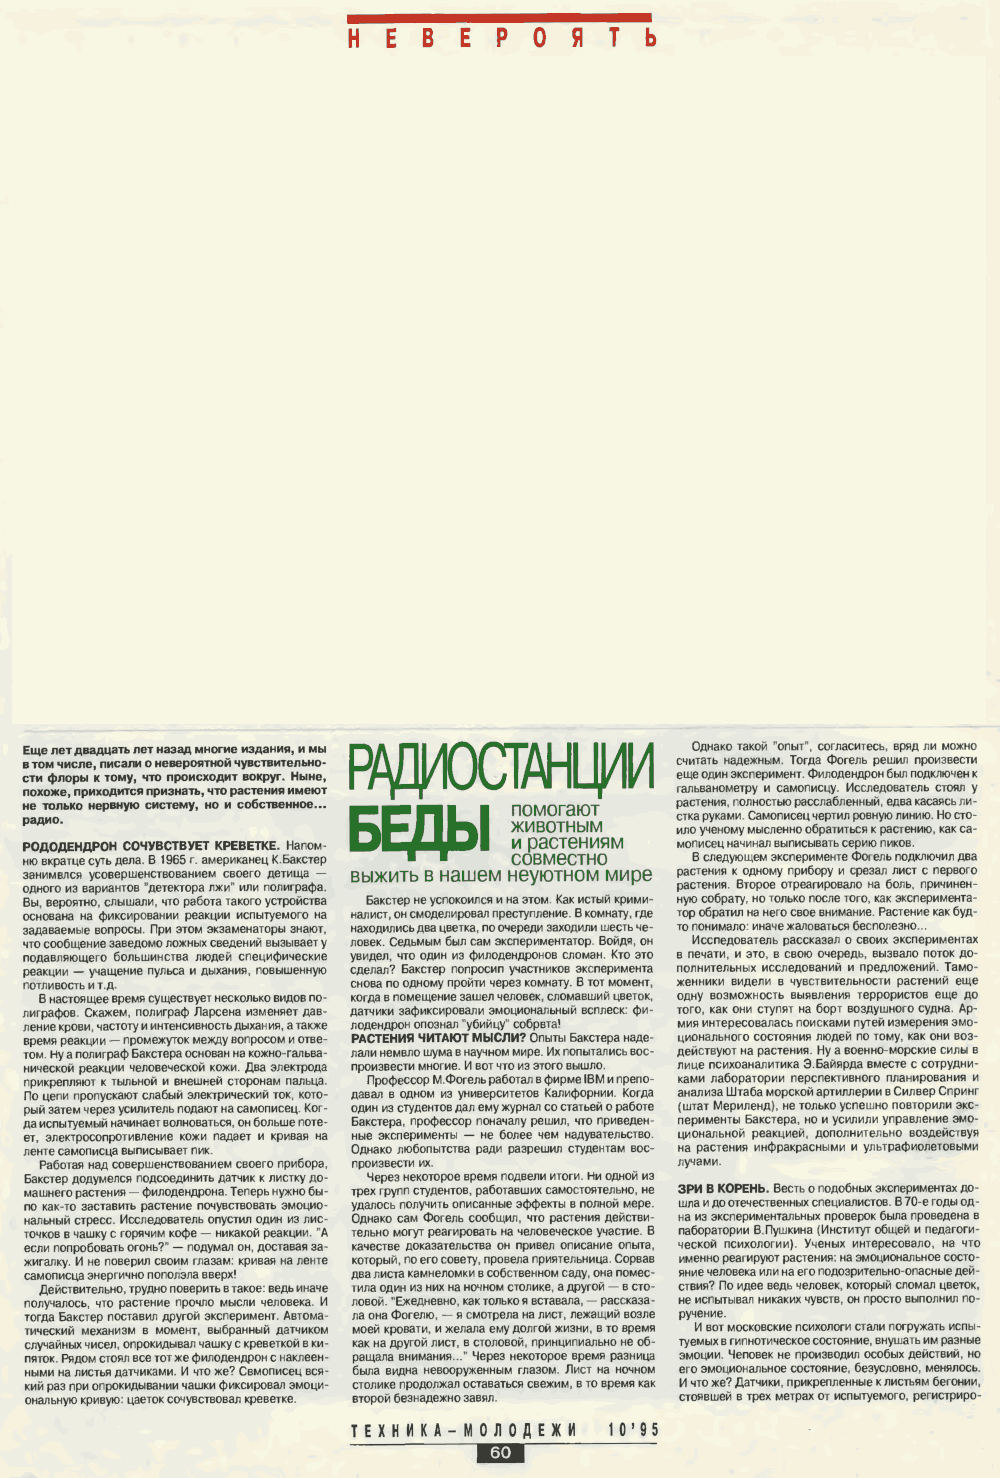 Радиостанции беды. С. Славин. Техника — Молодёжи, 1995, №10, с.60-62. Фотокопия №1